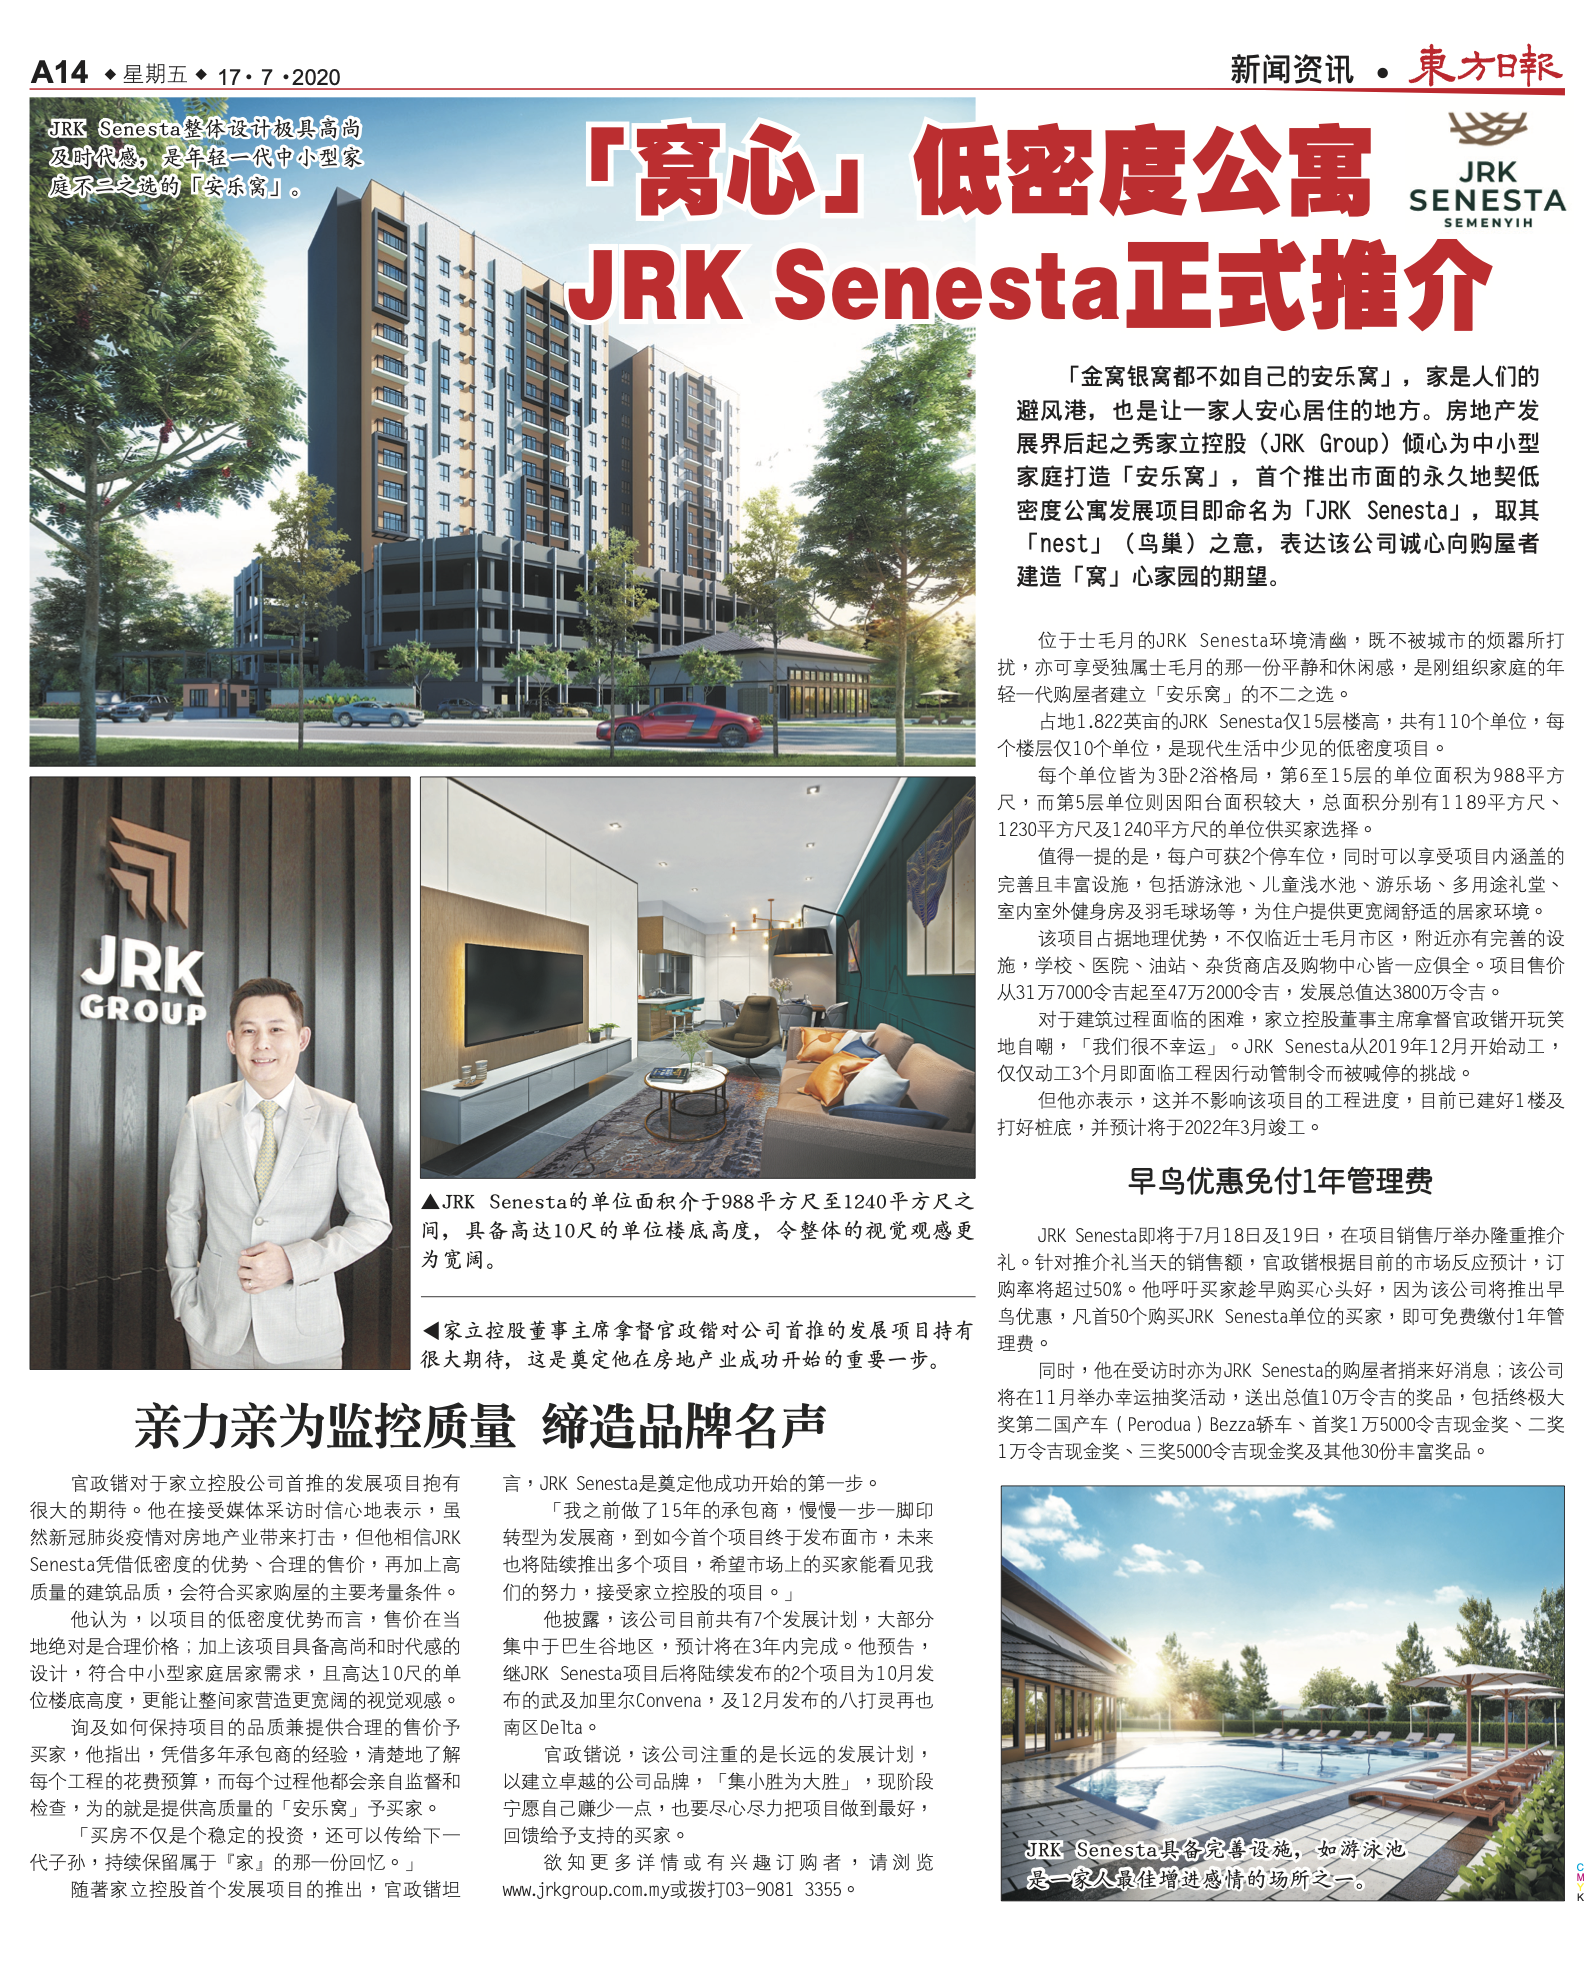 「窩心」低密度公寓 JRK Senesta正式推介